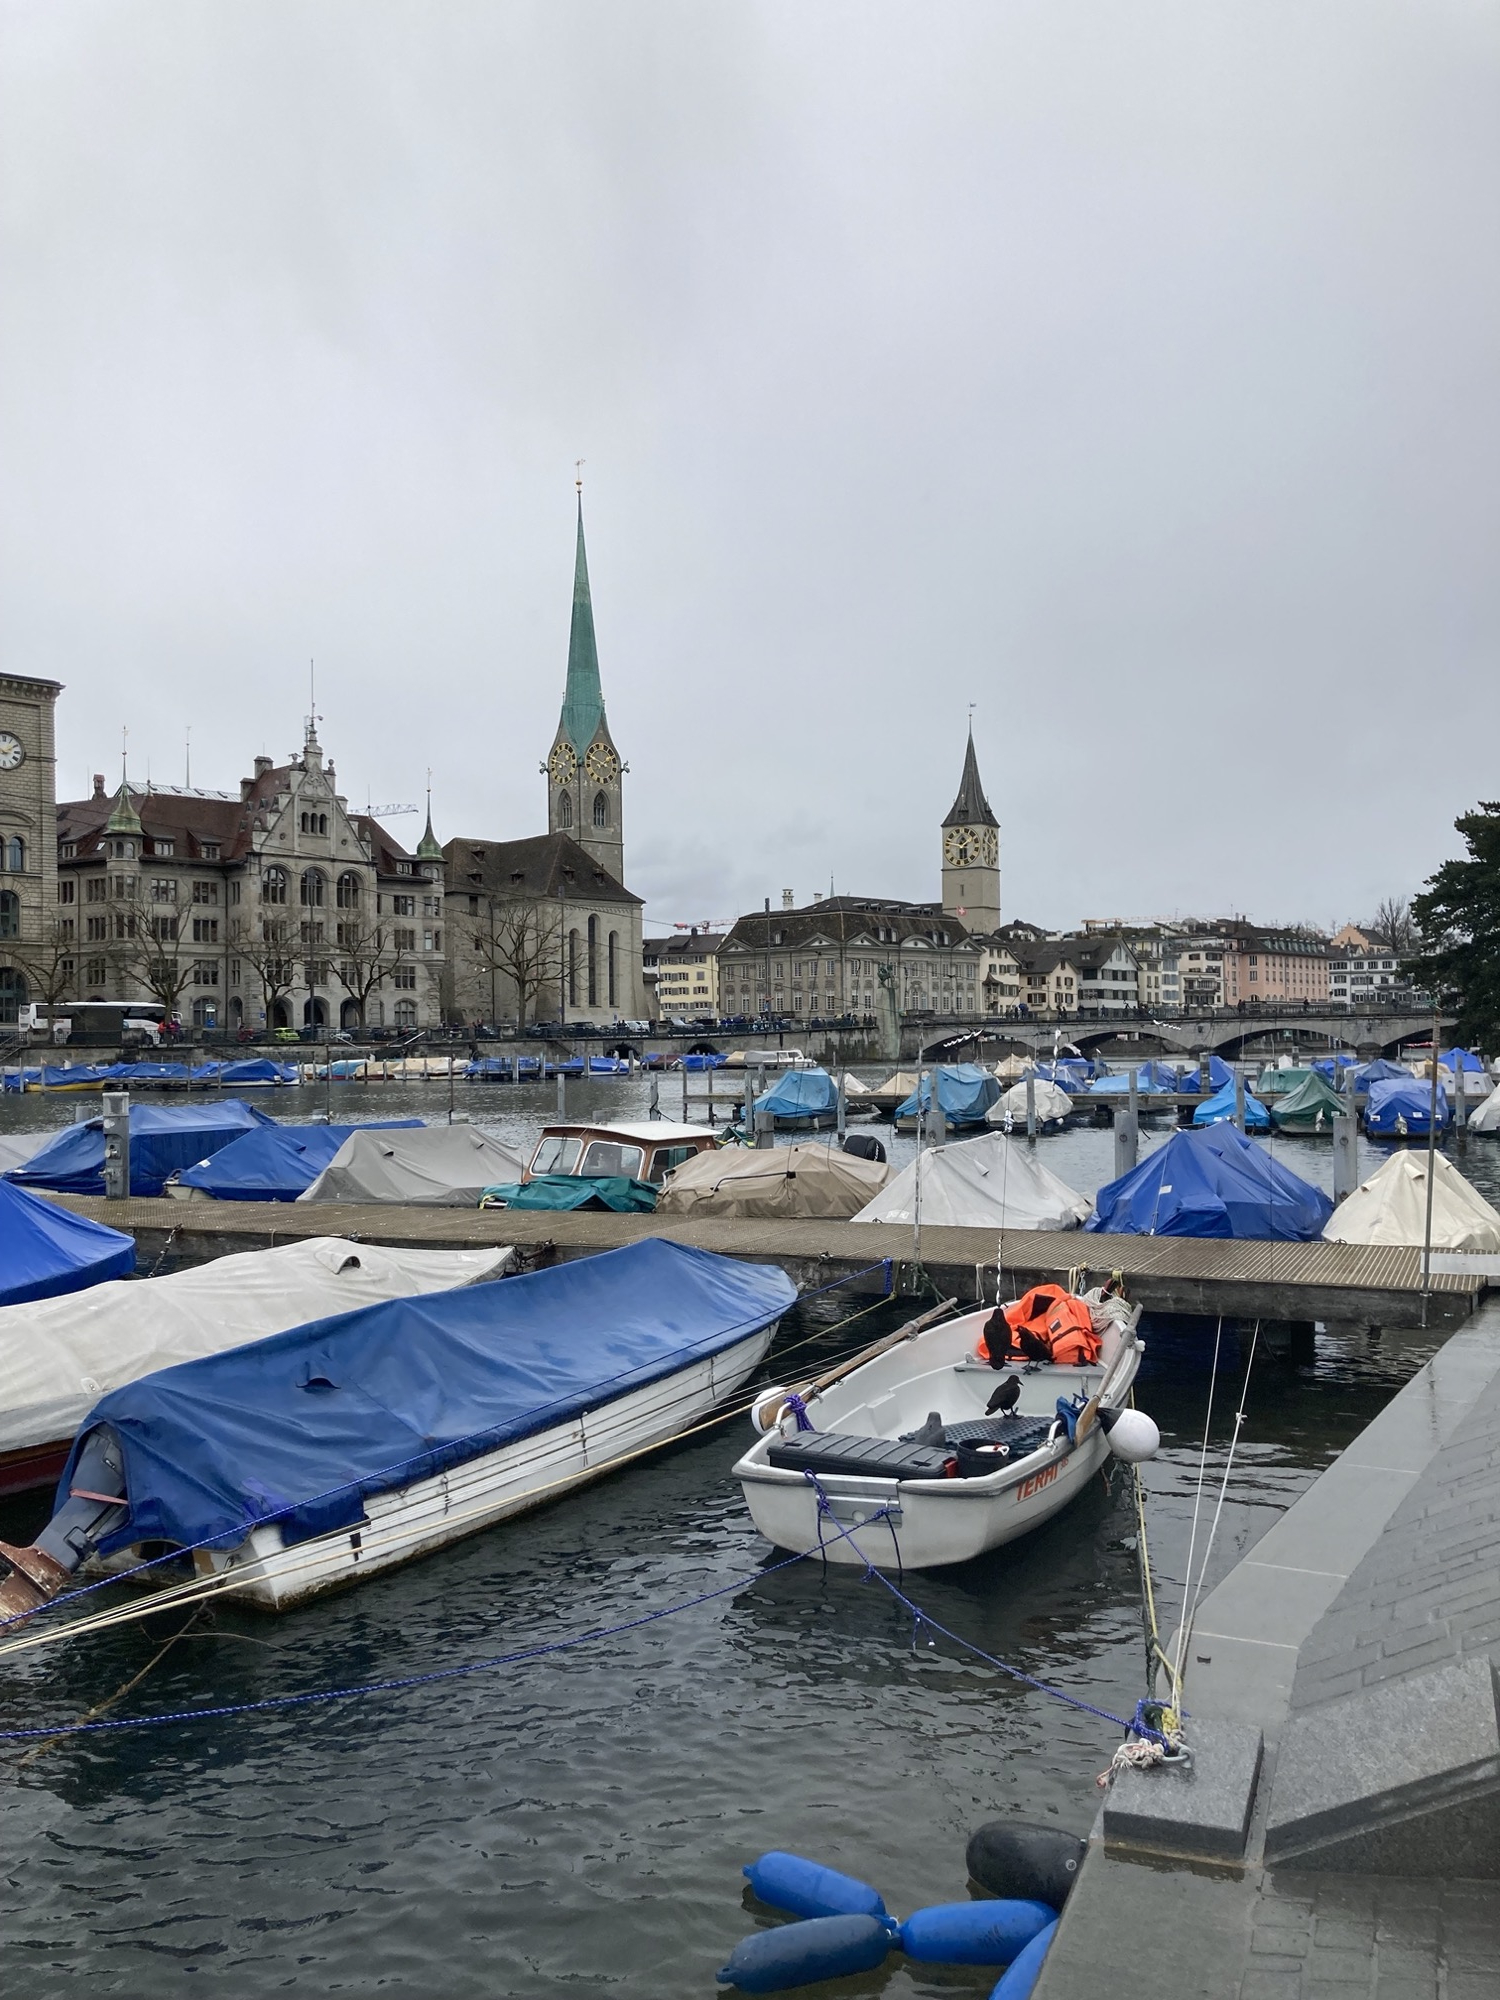 Yachthafen im inneren Limmat-Becken, die meisten Boote sind mit blauen oder weißen Planen abgedeckt, im Hintergrund überragen zwei Kirchtürme die Häuser der Altstadt